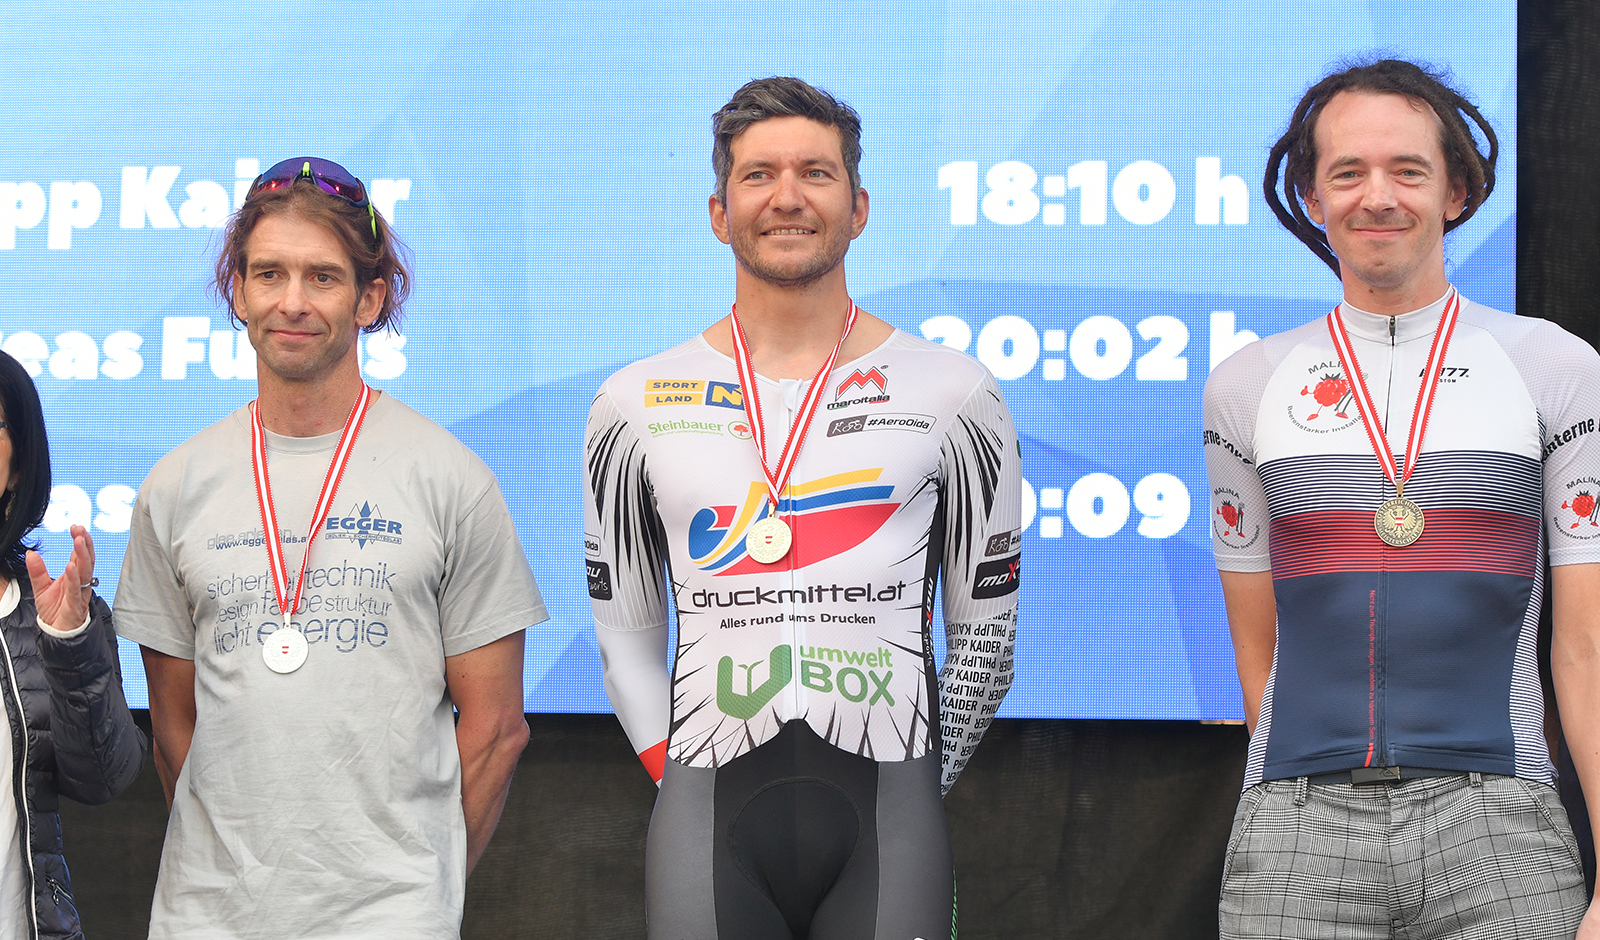 Philipp Kaider am Podest mit der Goldmedaille bei der Österreichischen Meisterschaft im Ultracycling beim Race Around Niederösterreich